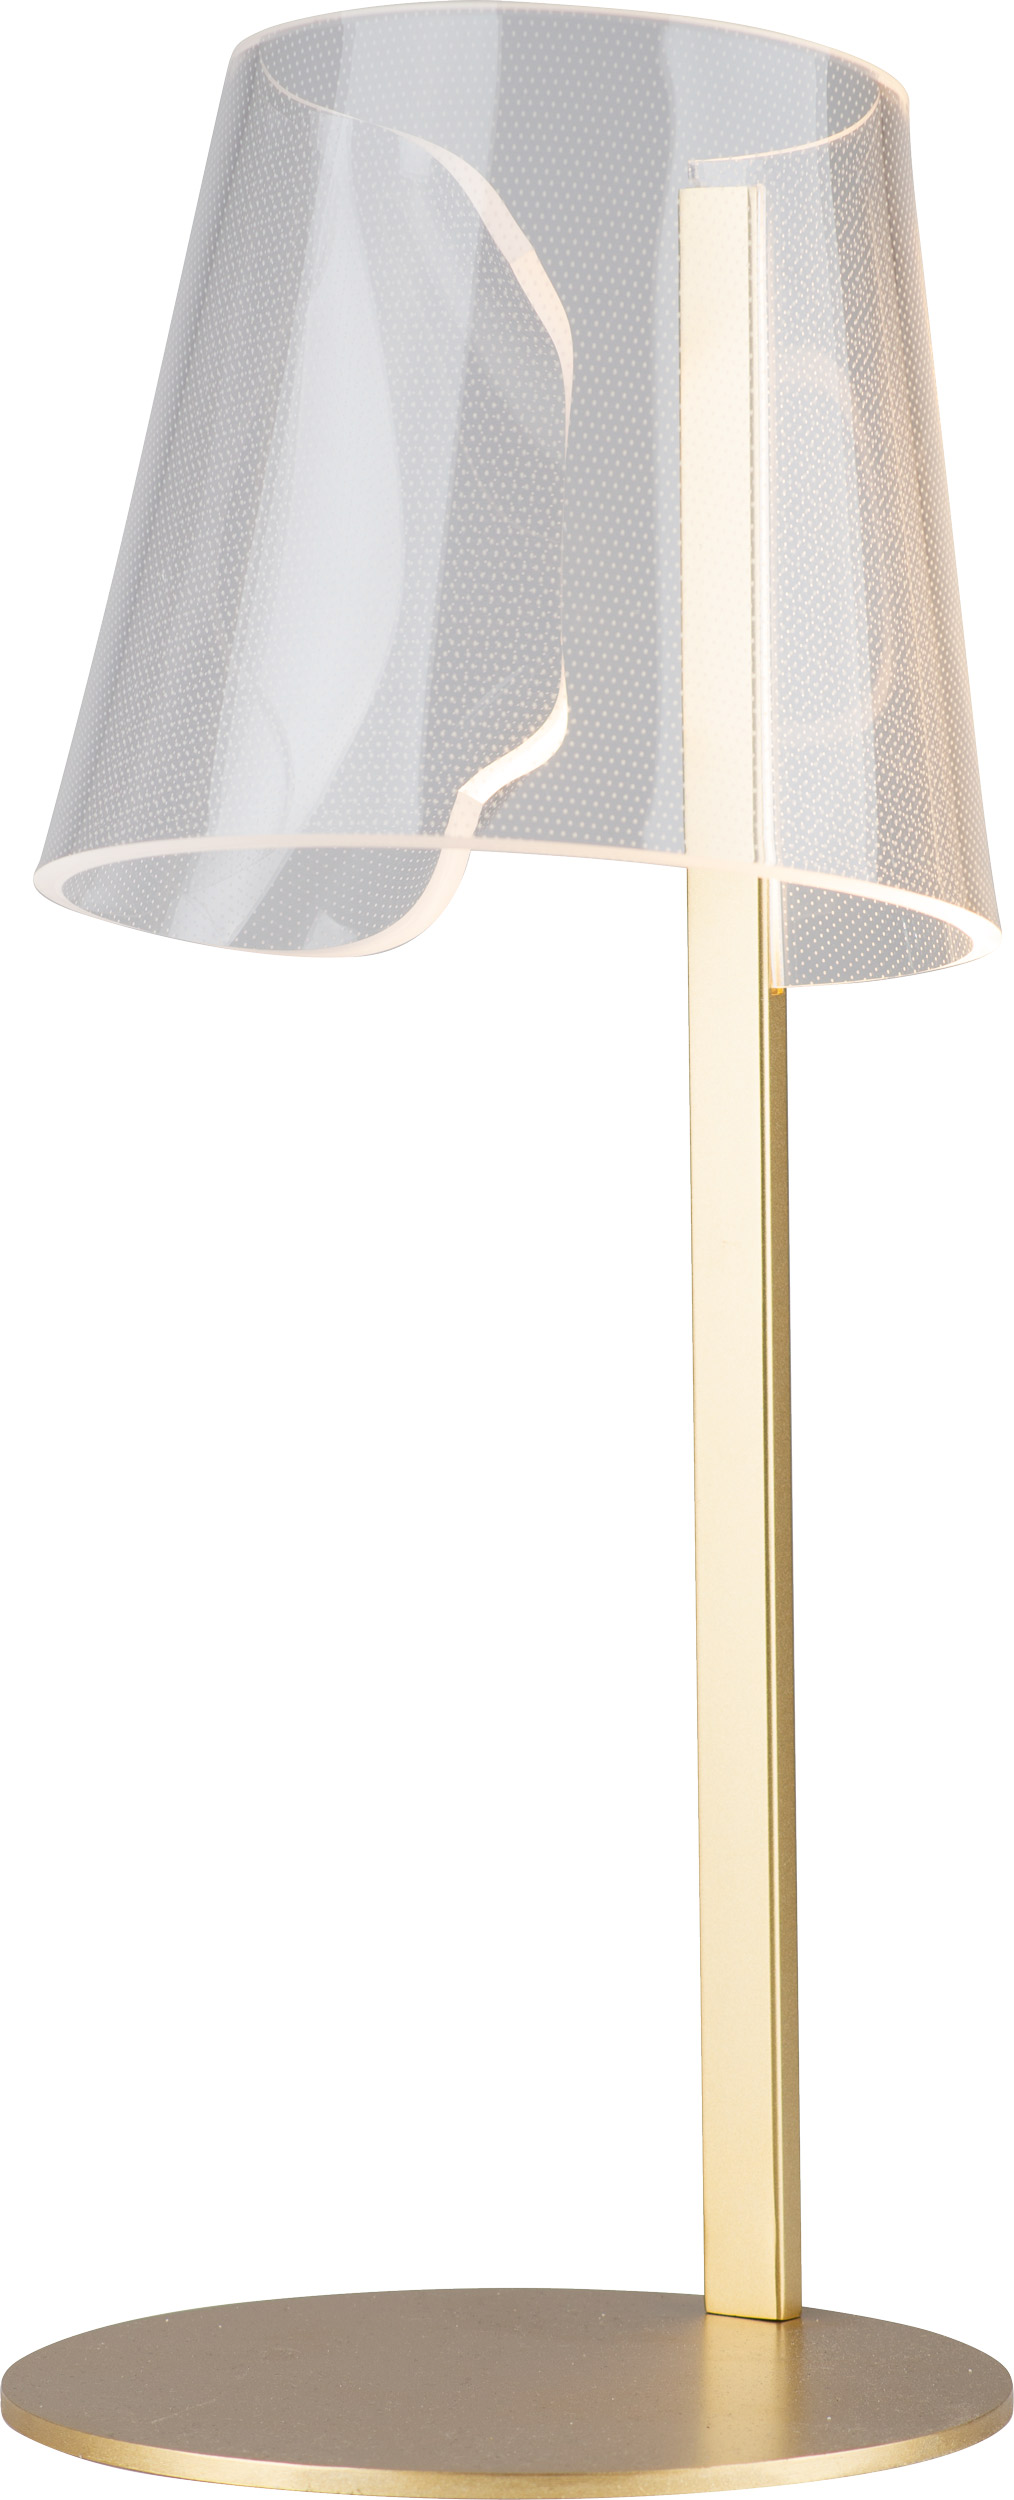 SEDA T0040 Schreibtisch- und Tischleuchte LED, Korpus: Gold, Lampenschirm: Acrylglas